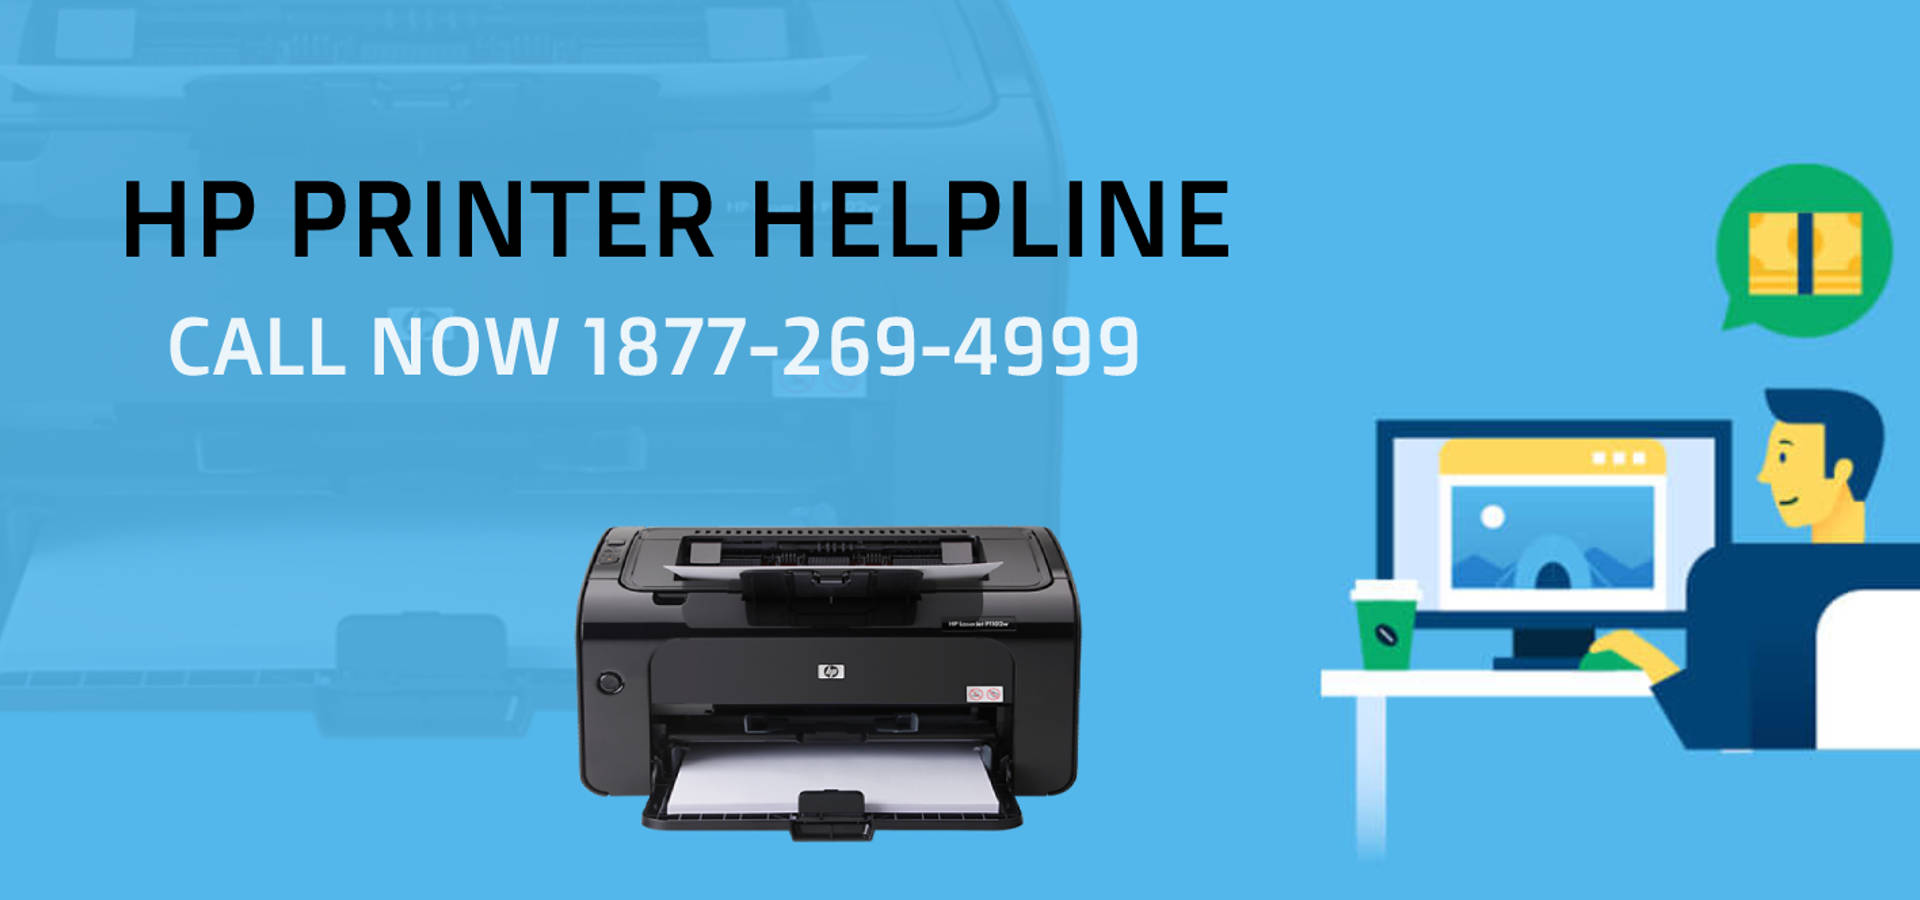 HP Printer Customer Care Number 1877-269-4999